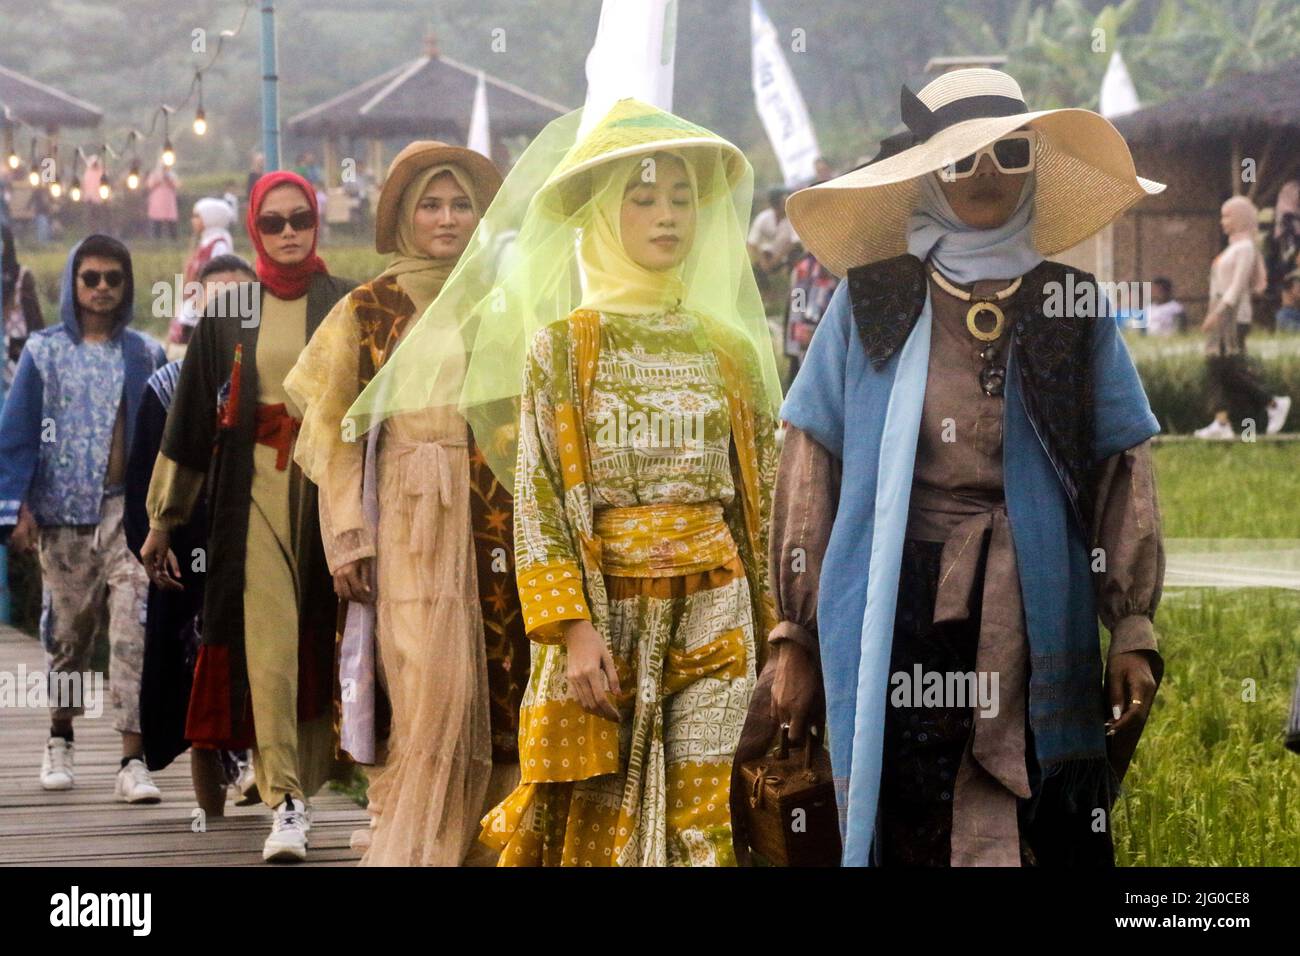 Bogor Fashion Culture Laufstege inmitten von Reisfeldern, Bogor City, Indonesien, 5. Juli 2022, Förderung von Reisfeldern als touristisches Gebiet Stockfoto